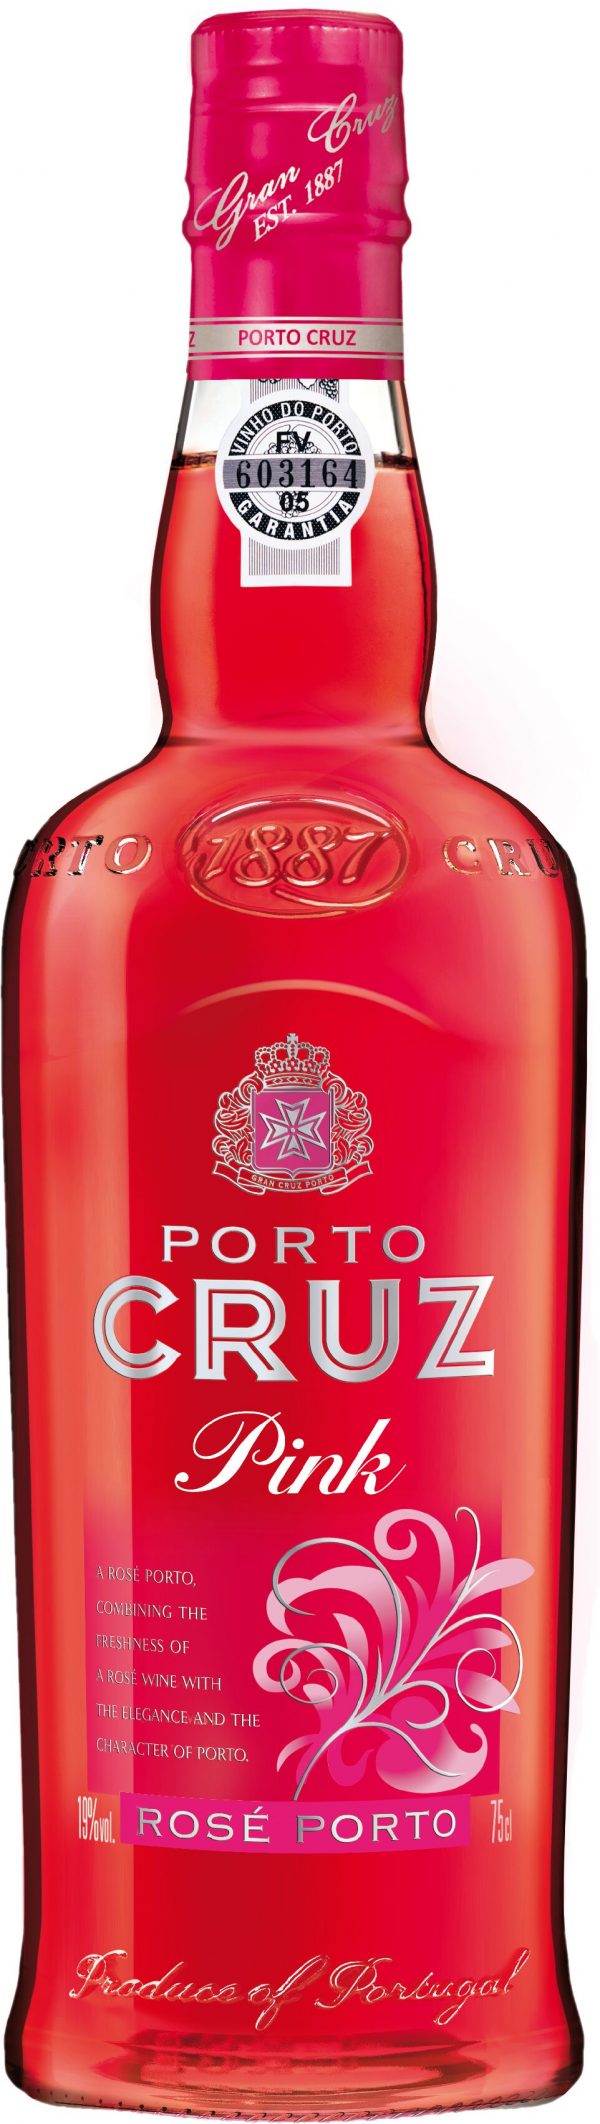 Porto Cruz Pink